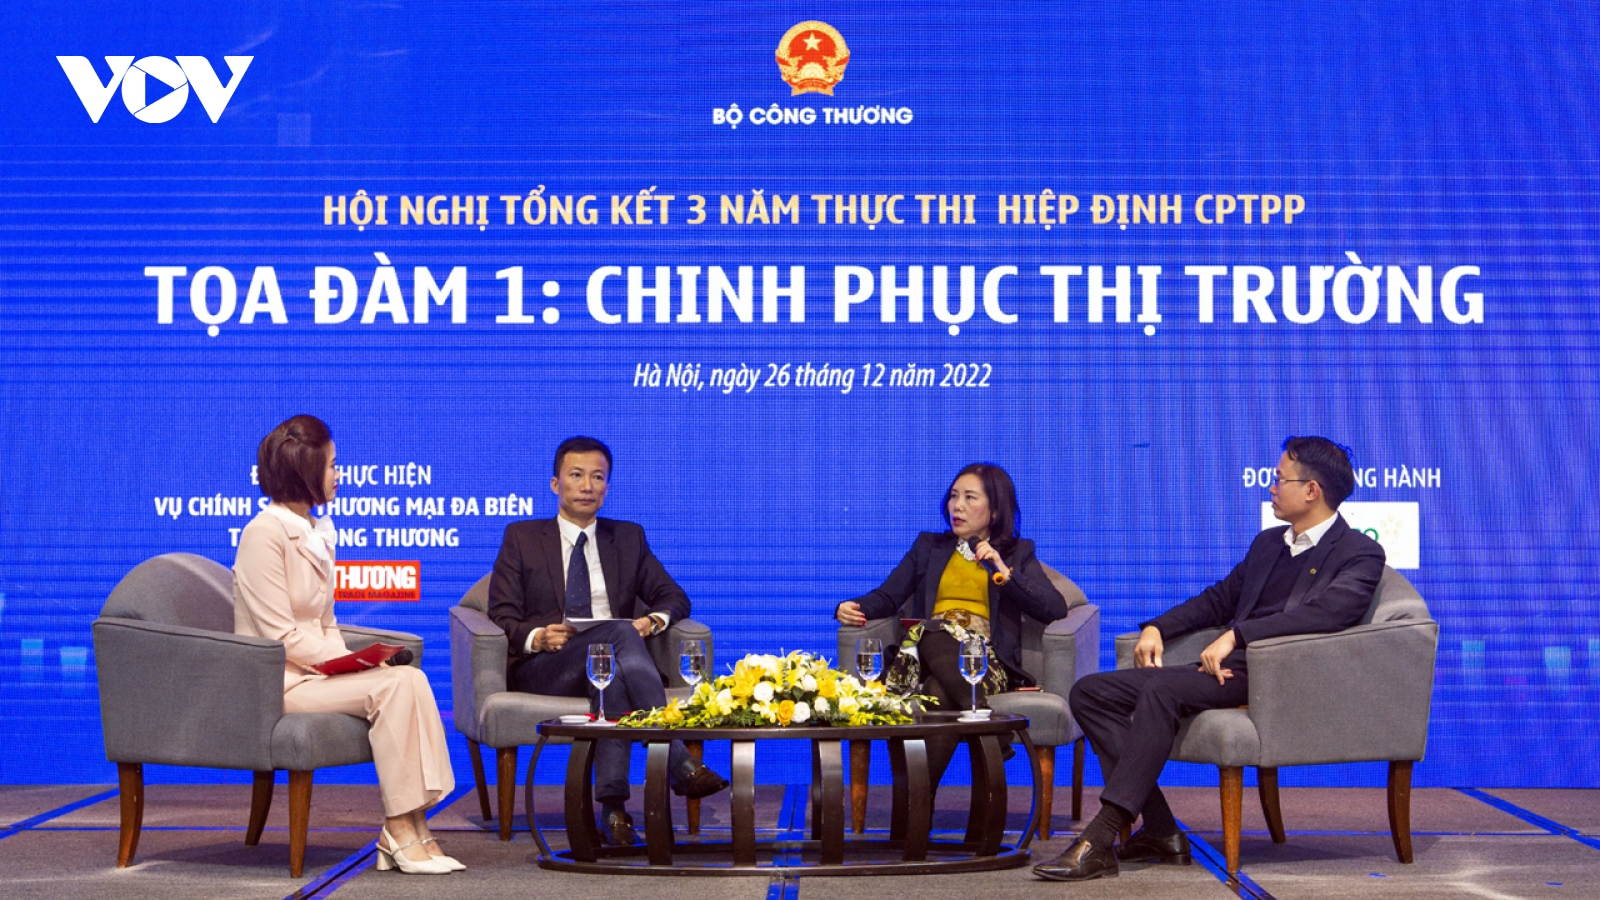 Thị trường CPTPP cần gia tăng sự hiện diện của hàng Việt